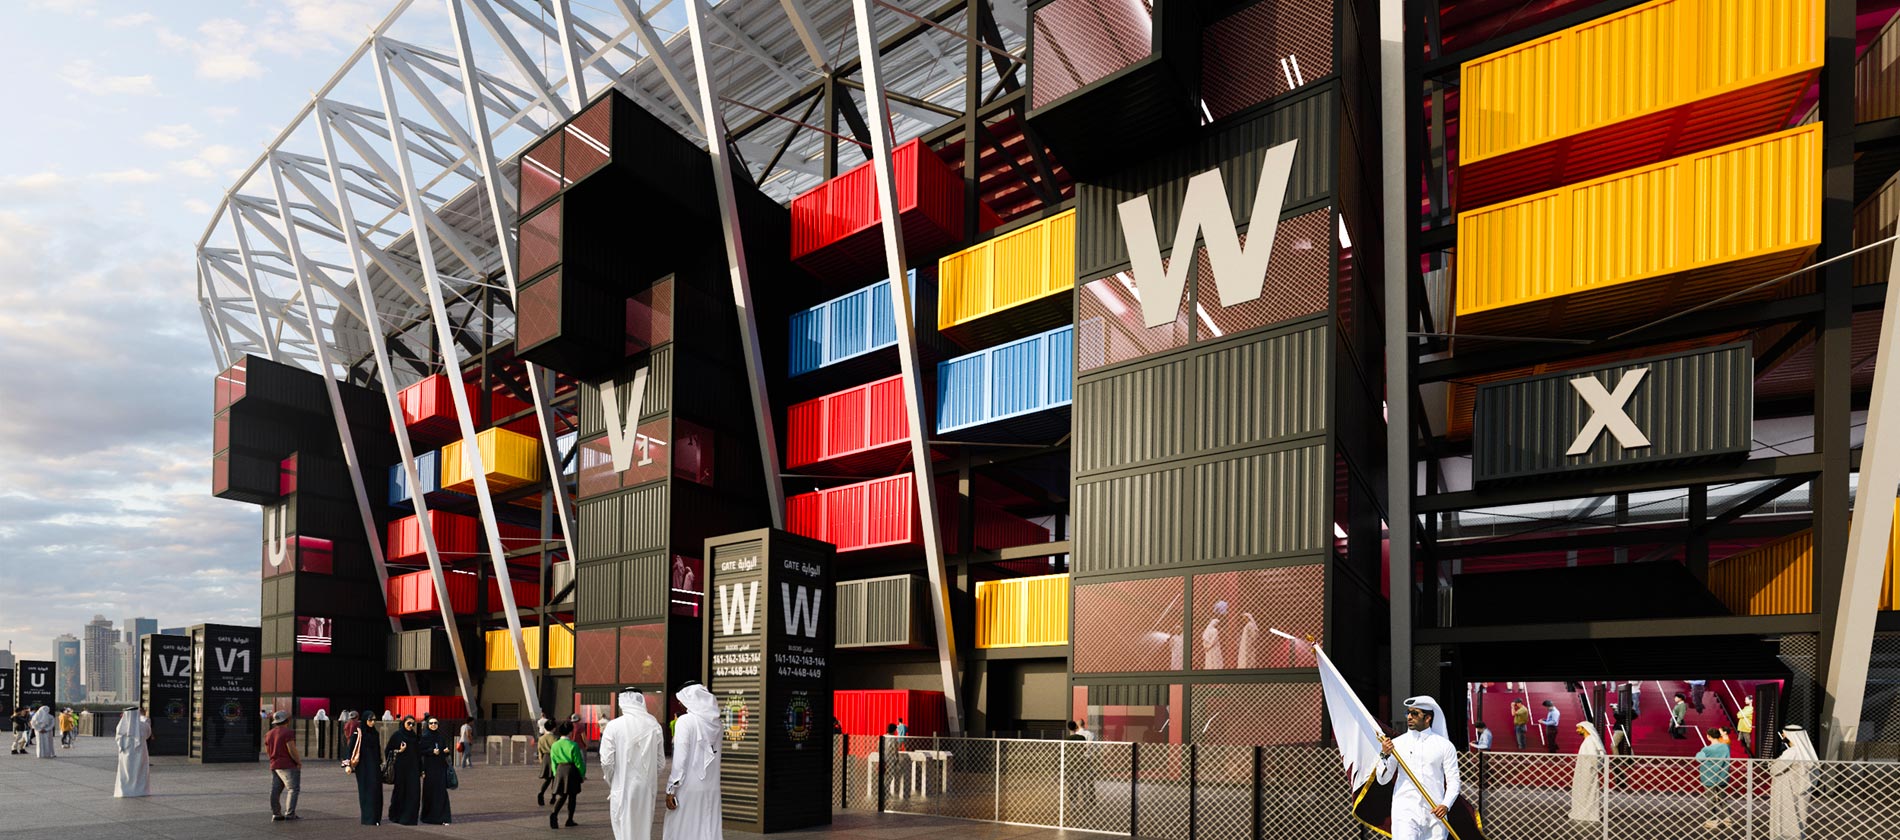 Đây là Stadium 974 - sân vận động làm từ 974 thùng container để phục vụ cho World Cup 2022 ở Qatar